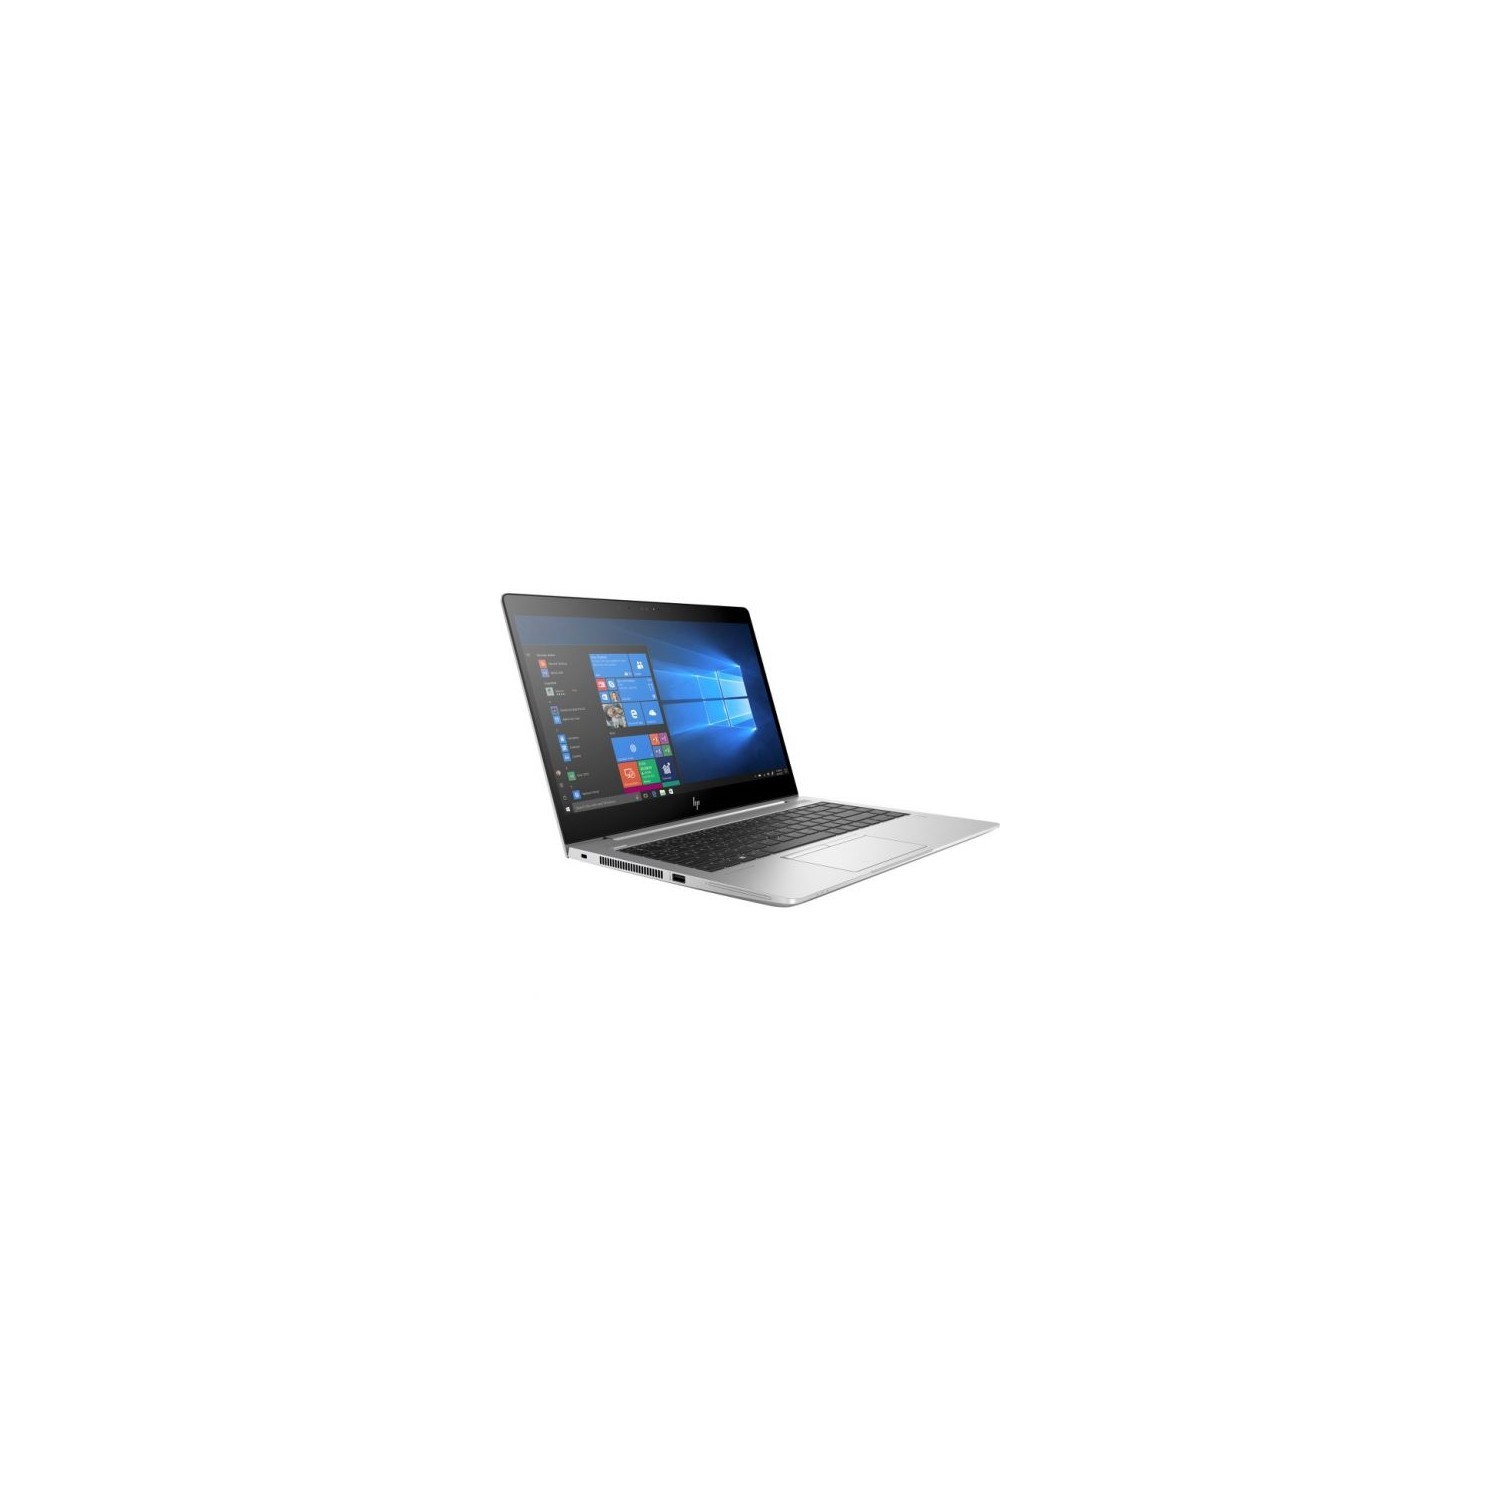 HP EliteBook 840 G5 14" LCD Notebook - Intel Core i5 (7th Gen) i5-7200U Dual-core (2 Core) 2.50 GHz - 8GB DDR4 SDRAM - 256GB